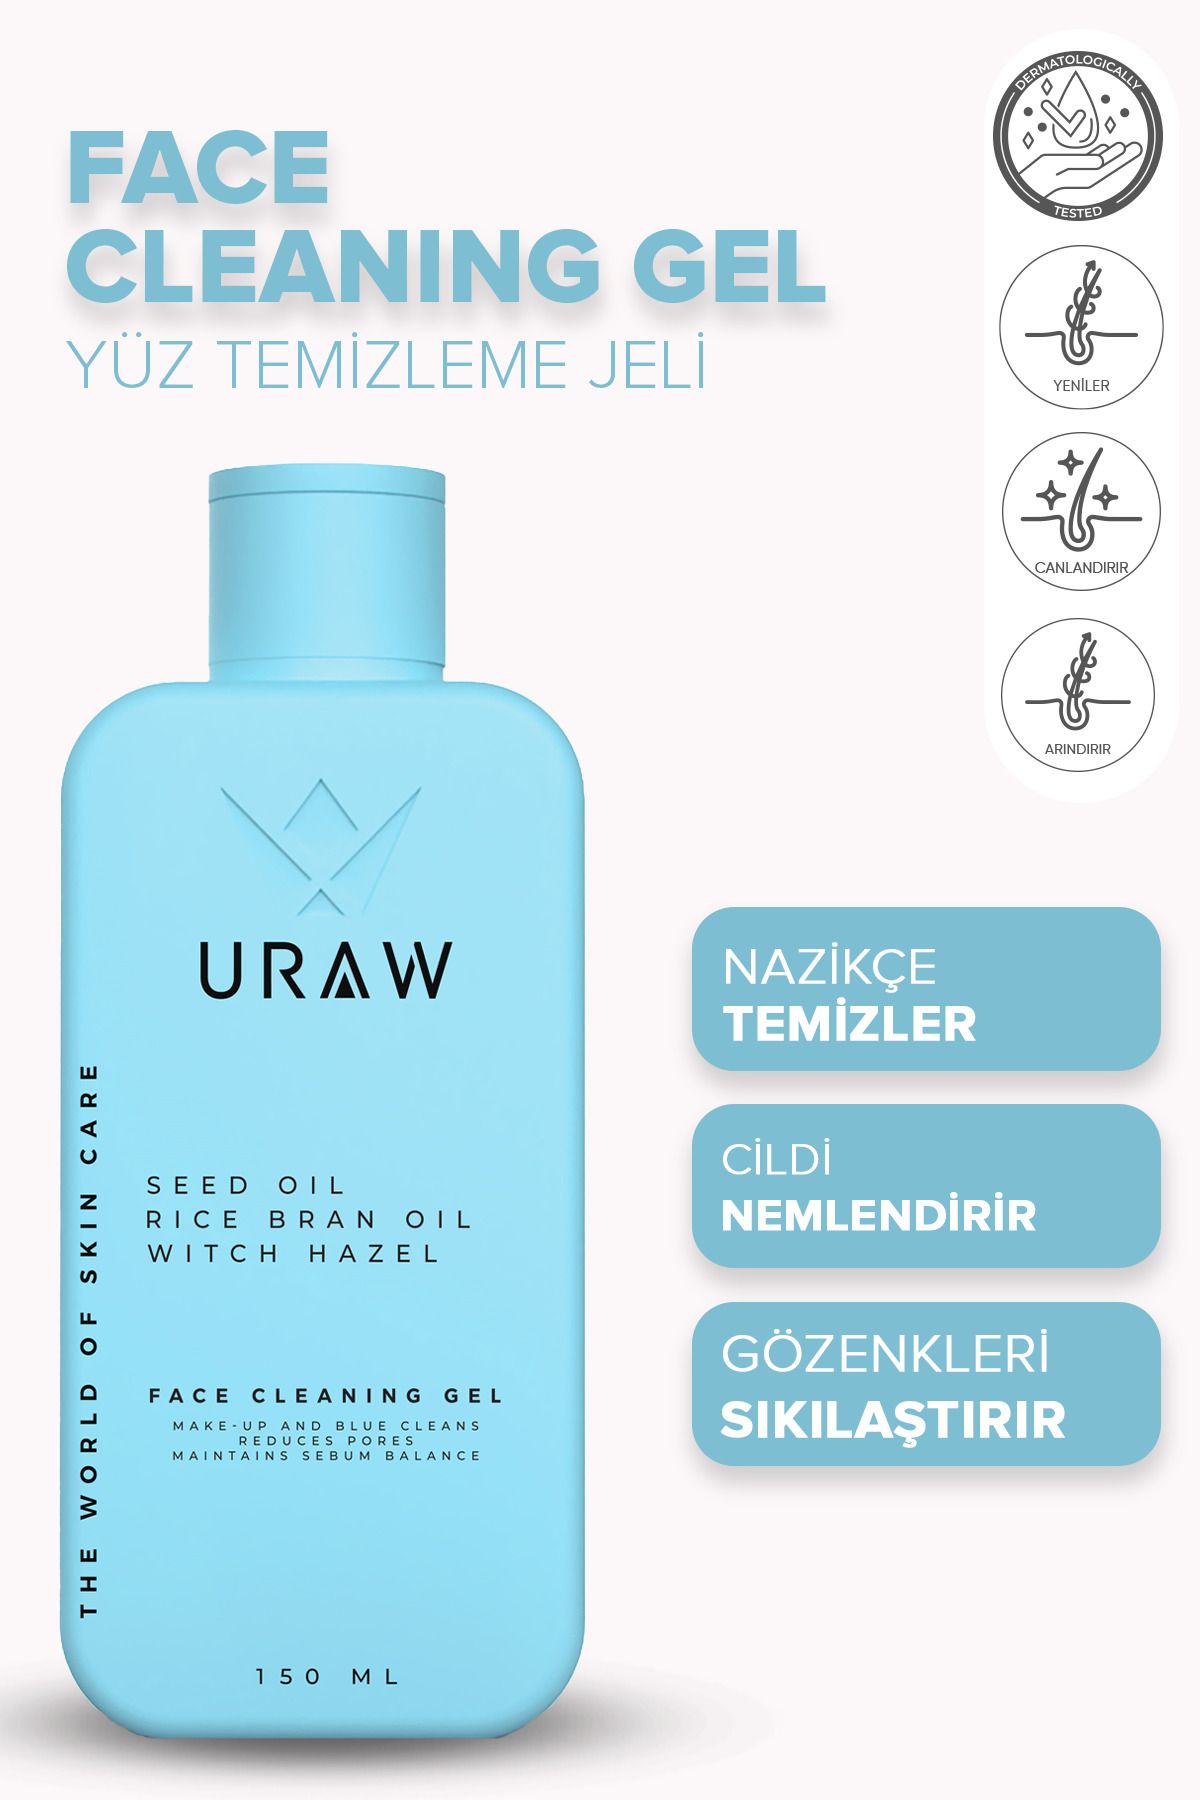 Uraw Face Cleaning Gel ( Derinlemesine Arındırıcı Ve Canlandırıcı Yüz Temizleme Jeli )(150 ML)